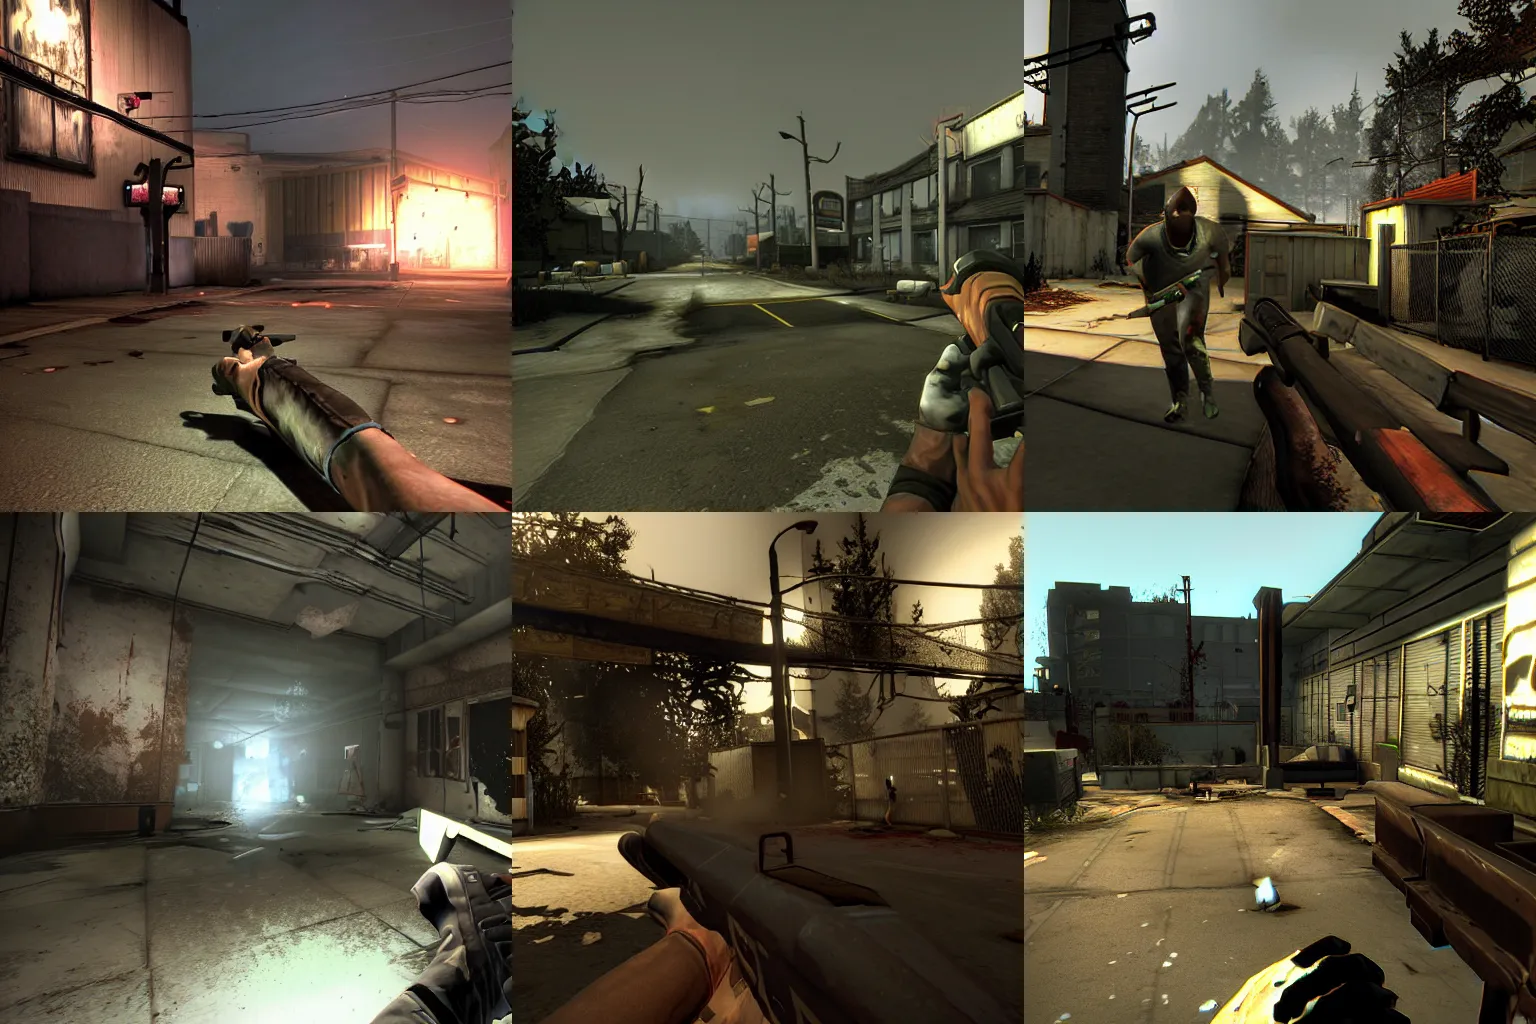 Prompt: A screenshot taken in Left 4 Dead